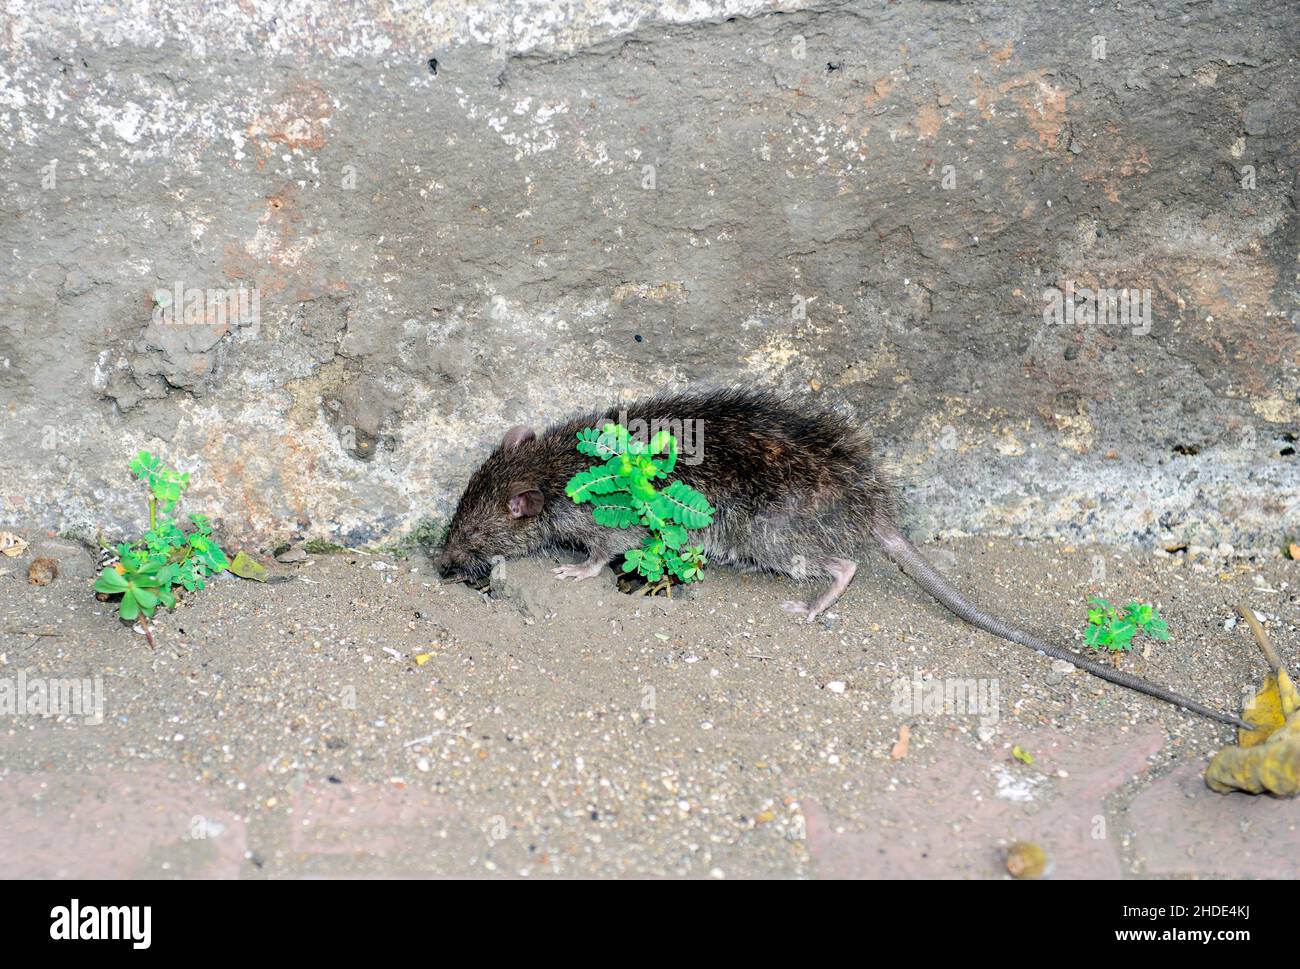 A sewer rat in Mumbai, India. Stock Photo